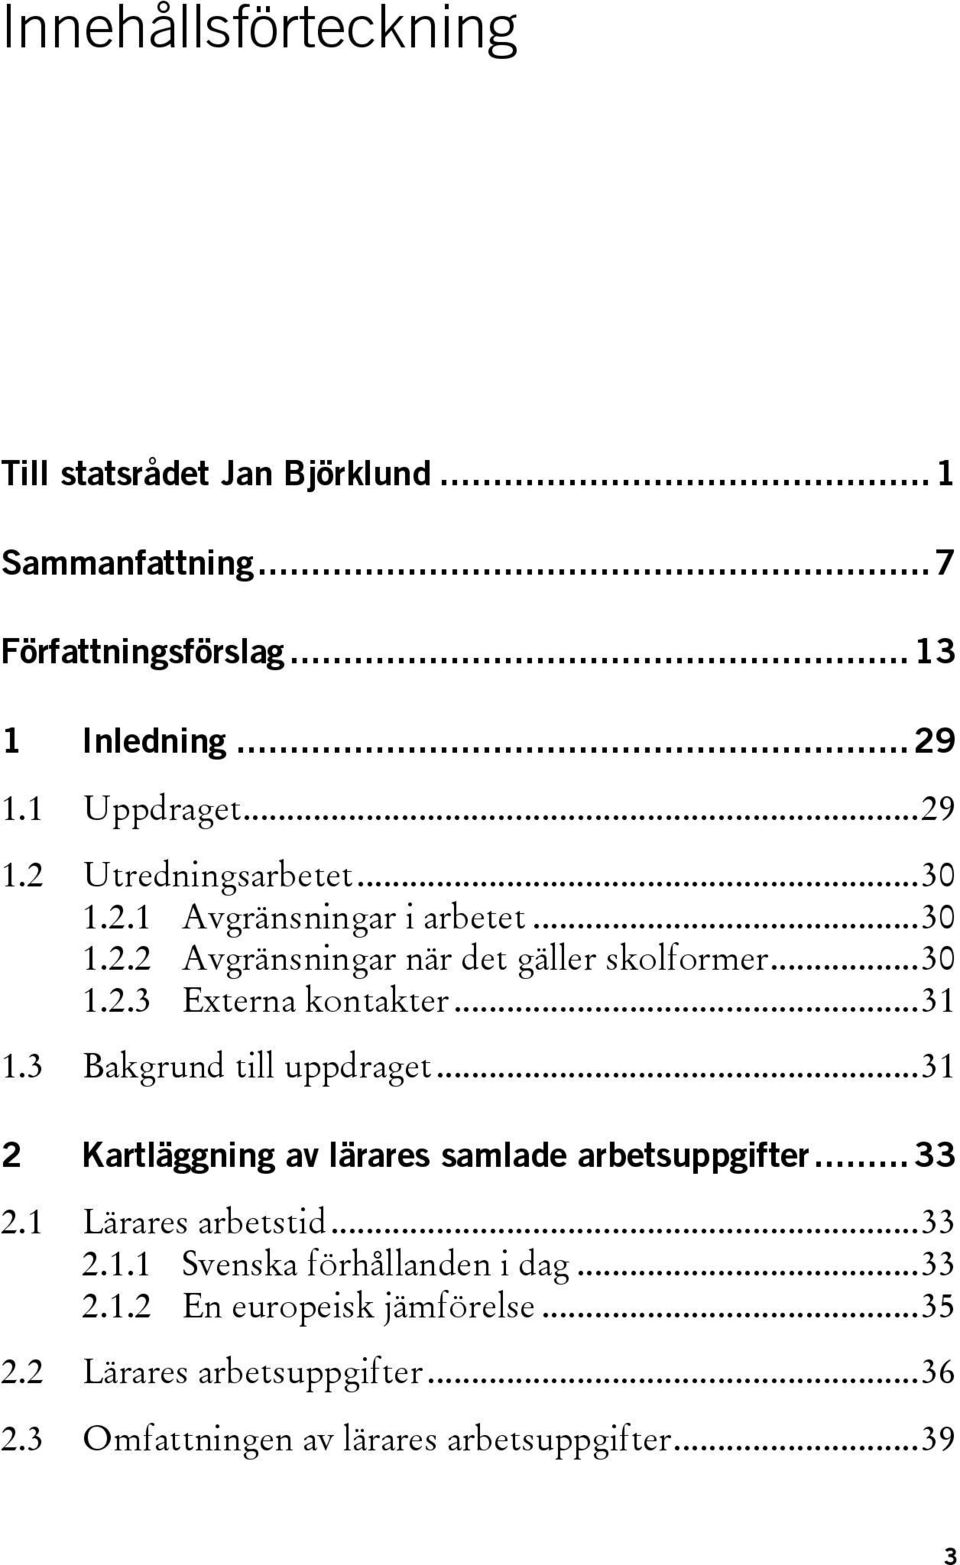 .. 31 1.3 Bakgrund till uppdraget... 31 2 Kartläggning av lärares samlade arbetsuppgifter... 33 2.1 Lärares arbetstid... 33 2.1.1 Svenska förhållanden i dag.